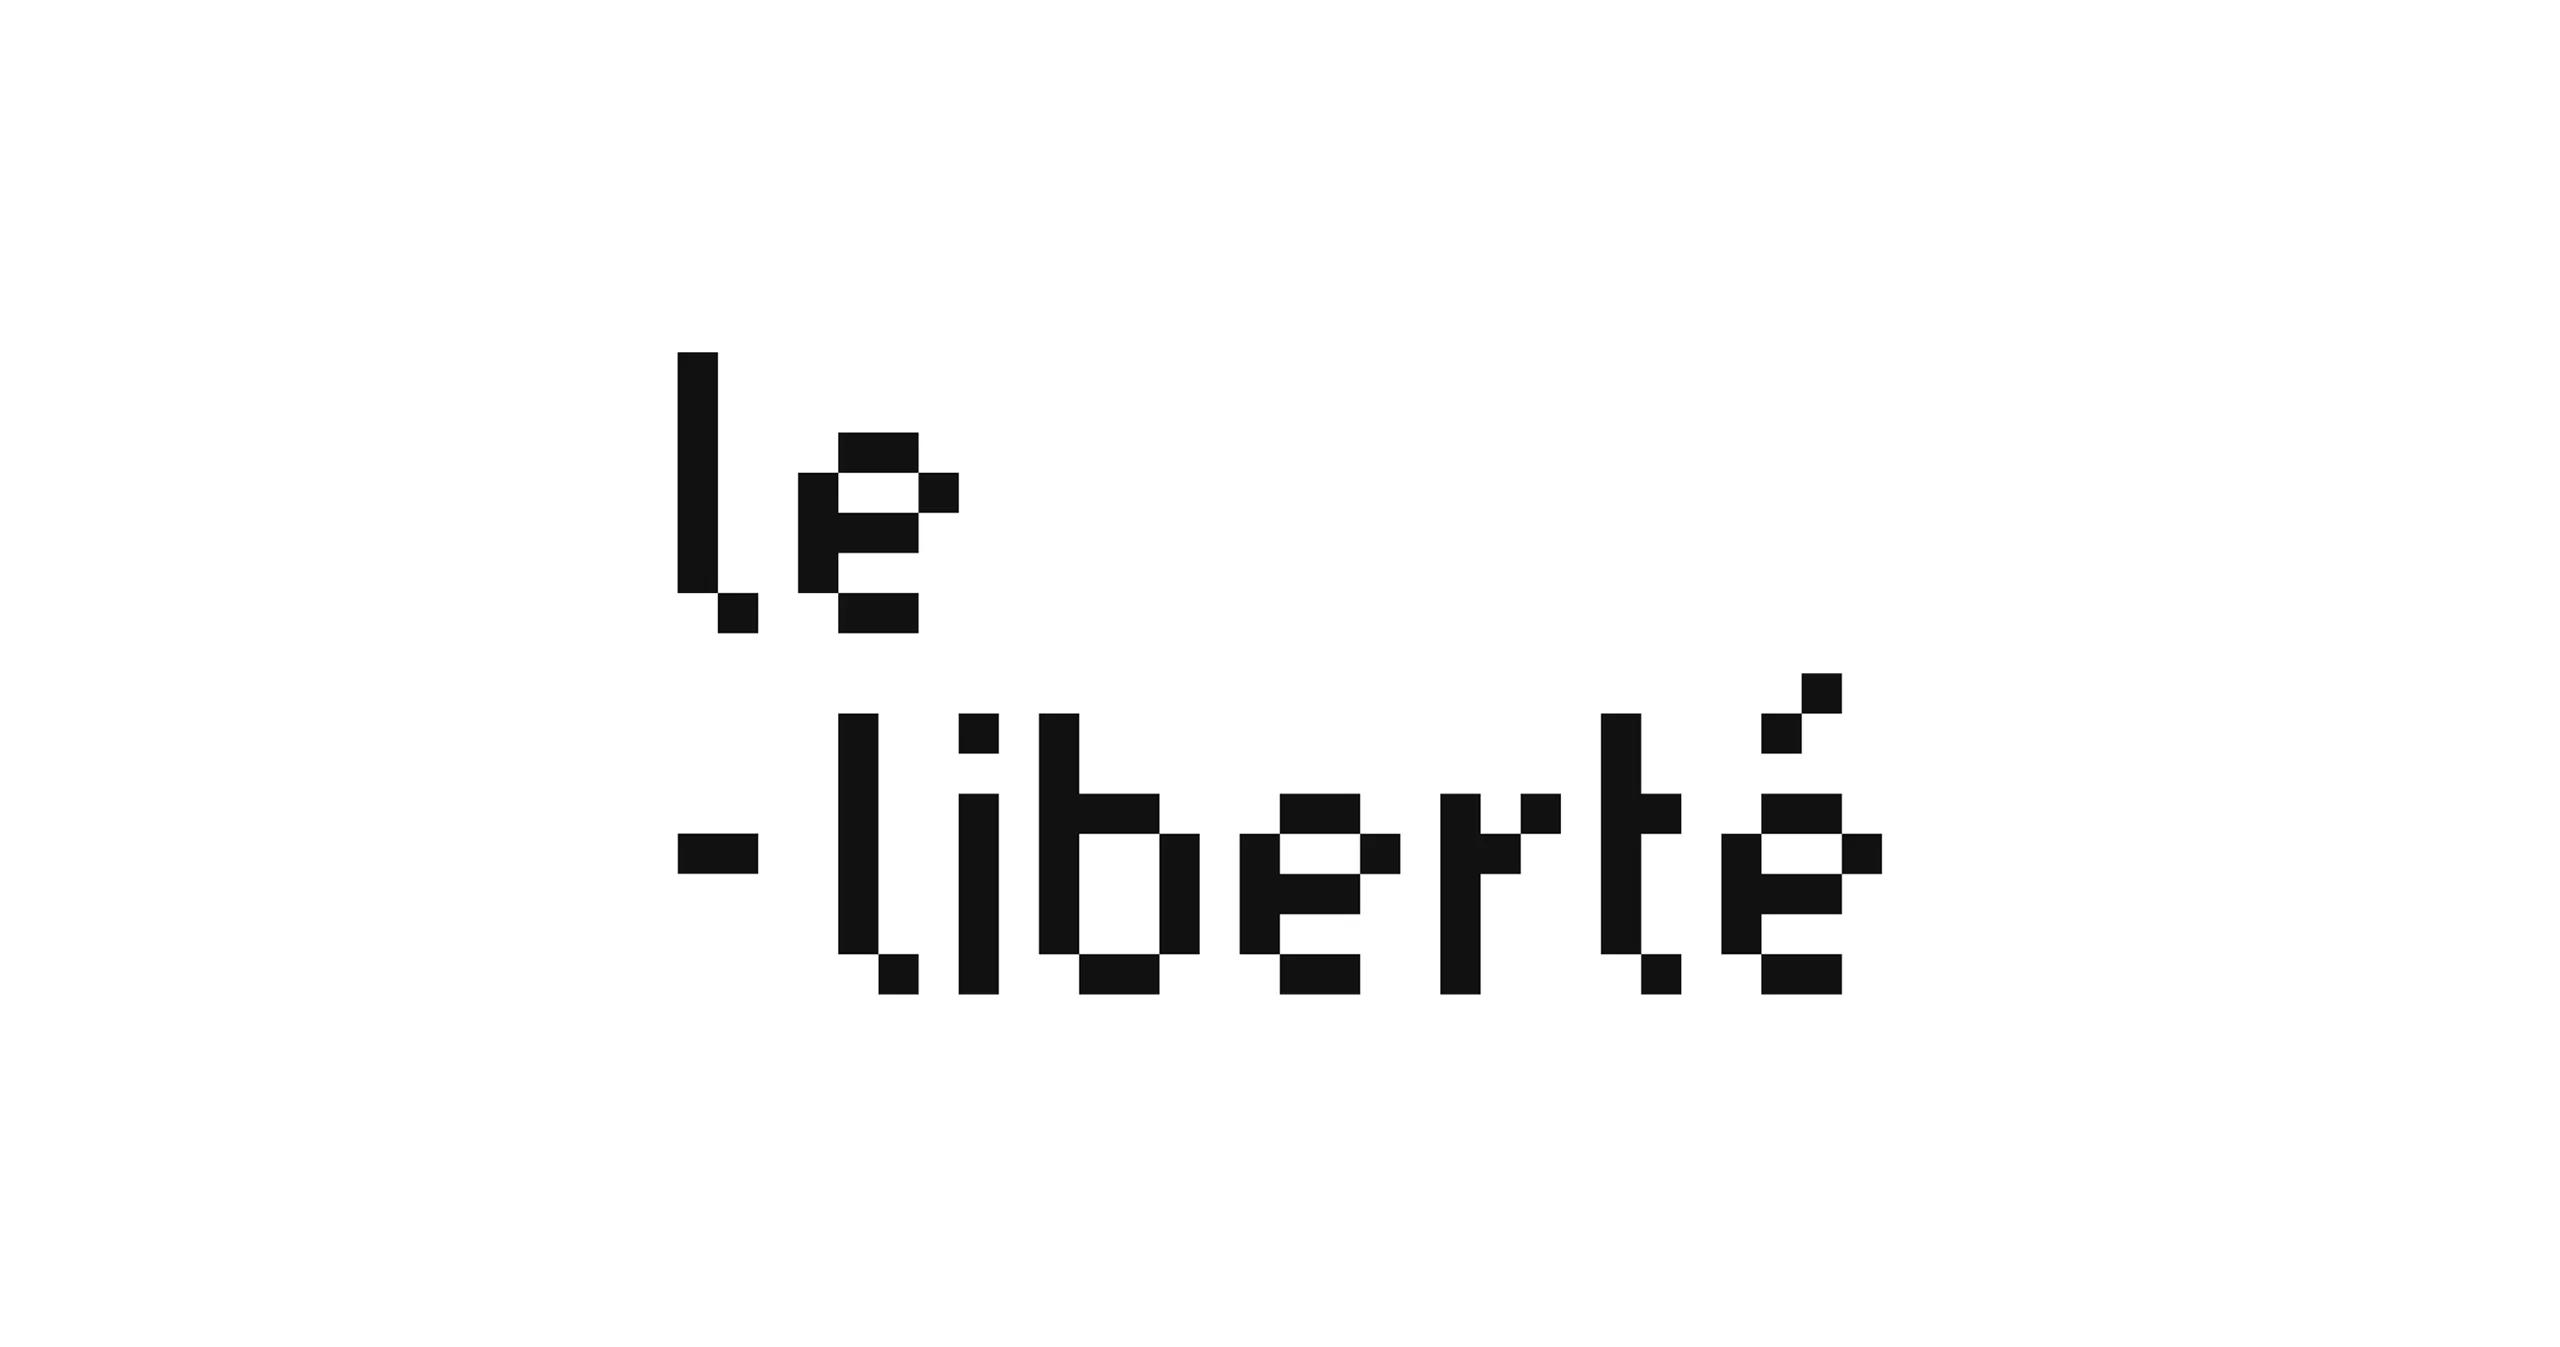 Logotype Le Liberté composé d'une typographie composée de pixels carrés